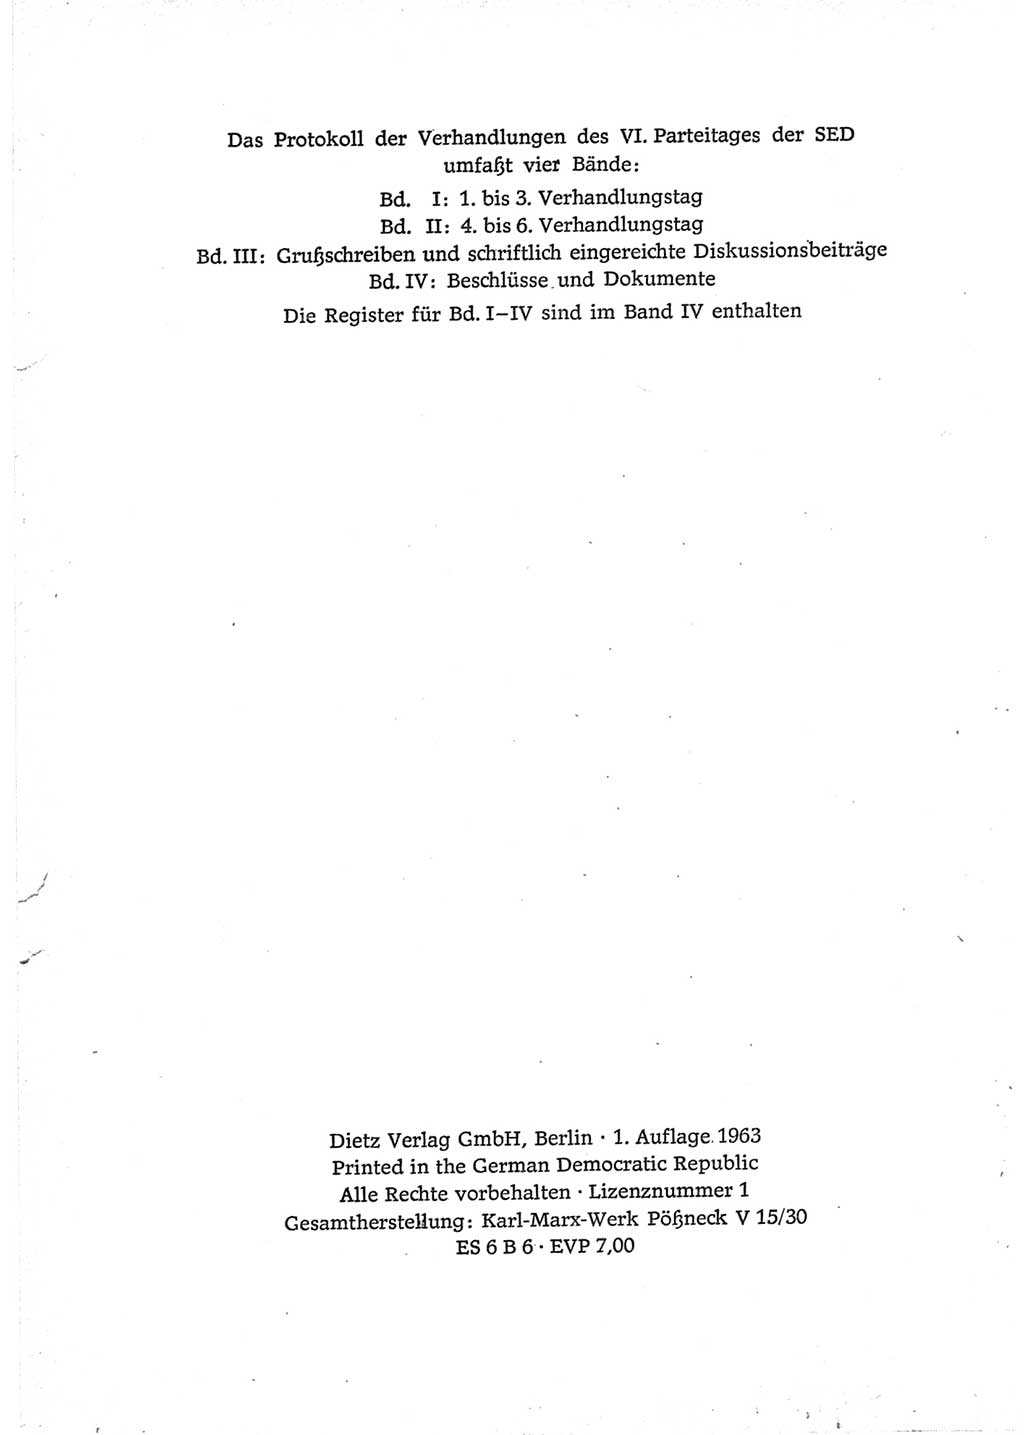 Protokoll der Verhandlungen des Ⅵ. Parteitages der Sozialistischen Einheitspartei Deutschlands (SED) [Deutsche Demokratische Republik (DDR)] 1963, Band Ⅲ, Seite 4 (Prot. Verh. Ⅵ. PT SED DDR 1963, Bd. Ⅲ, S. 4)